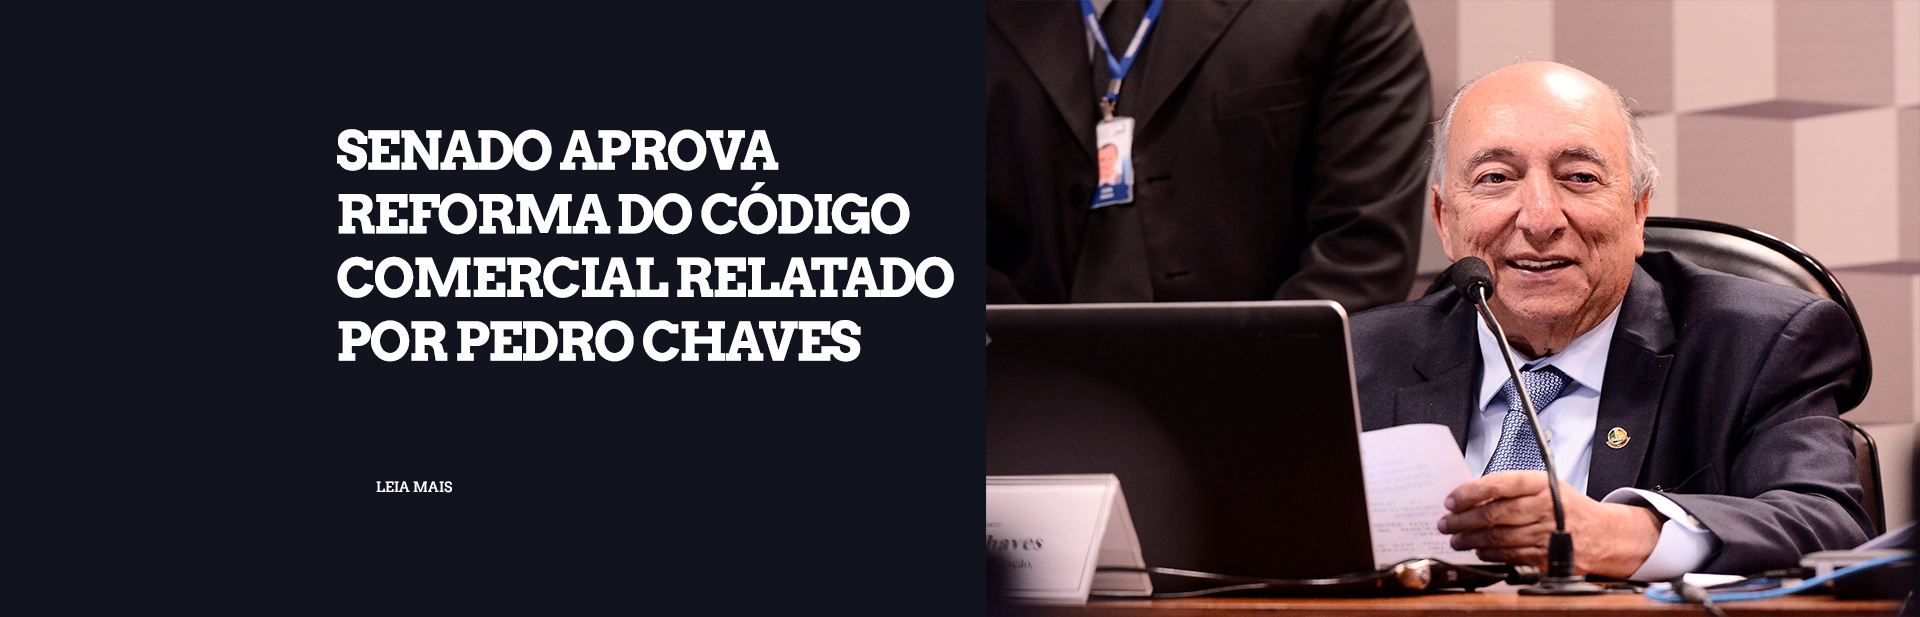 Senado aprova Reforma do Código Comercial relatado por Pedro Chaves